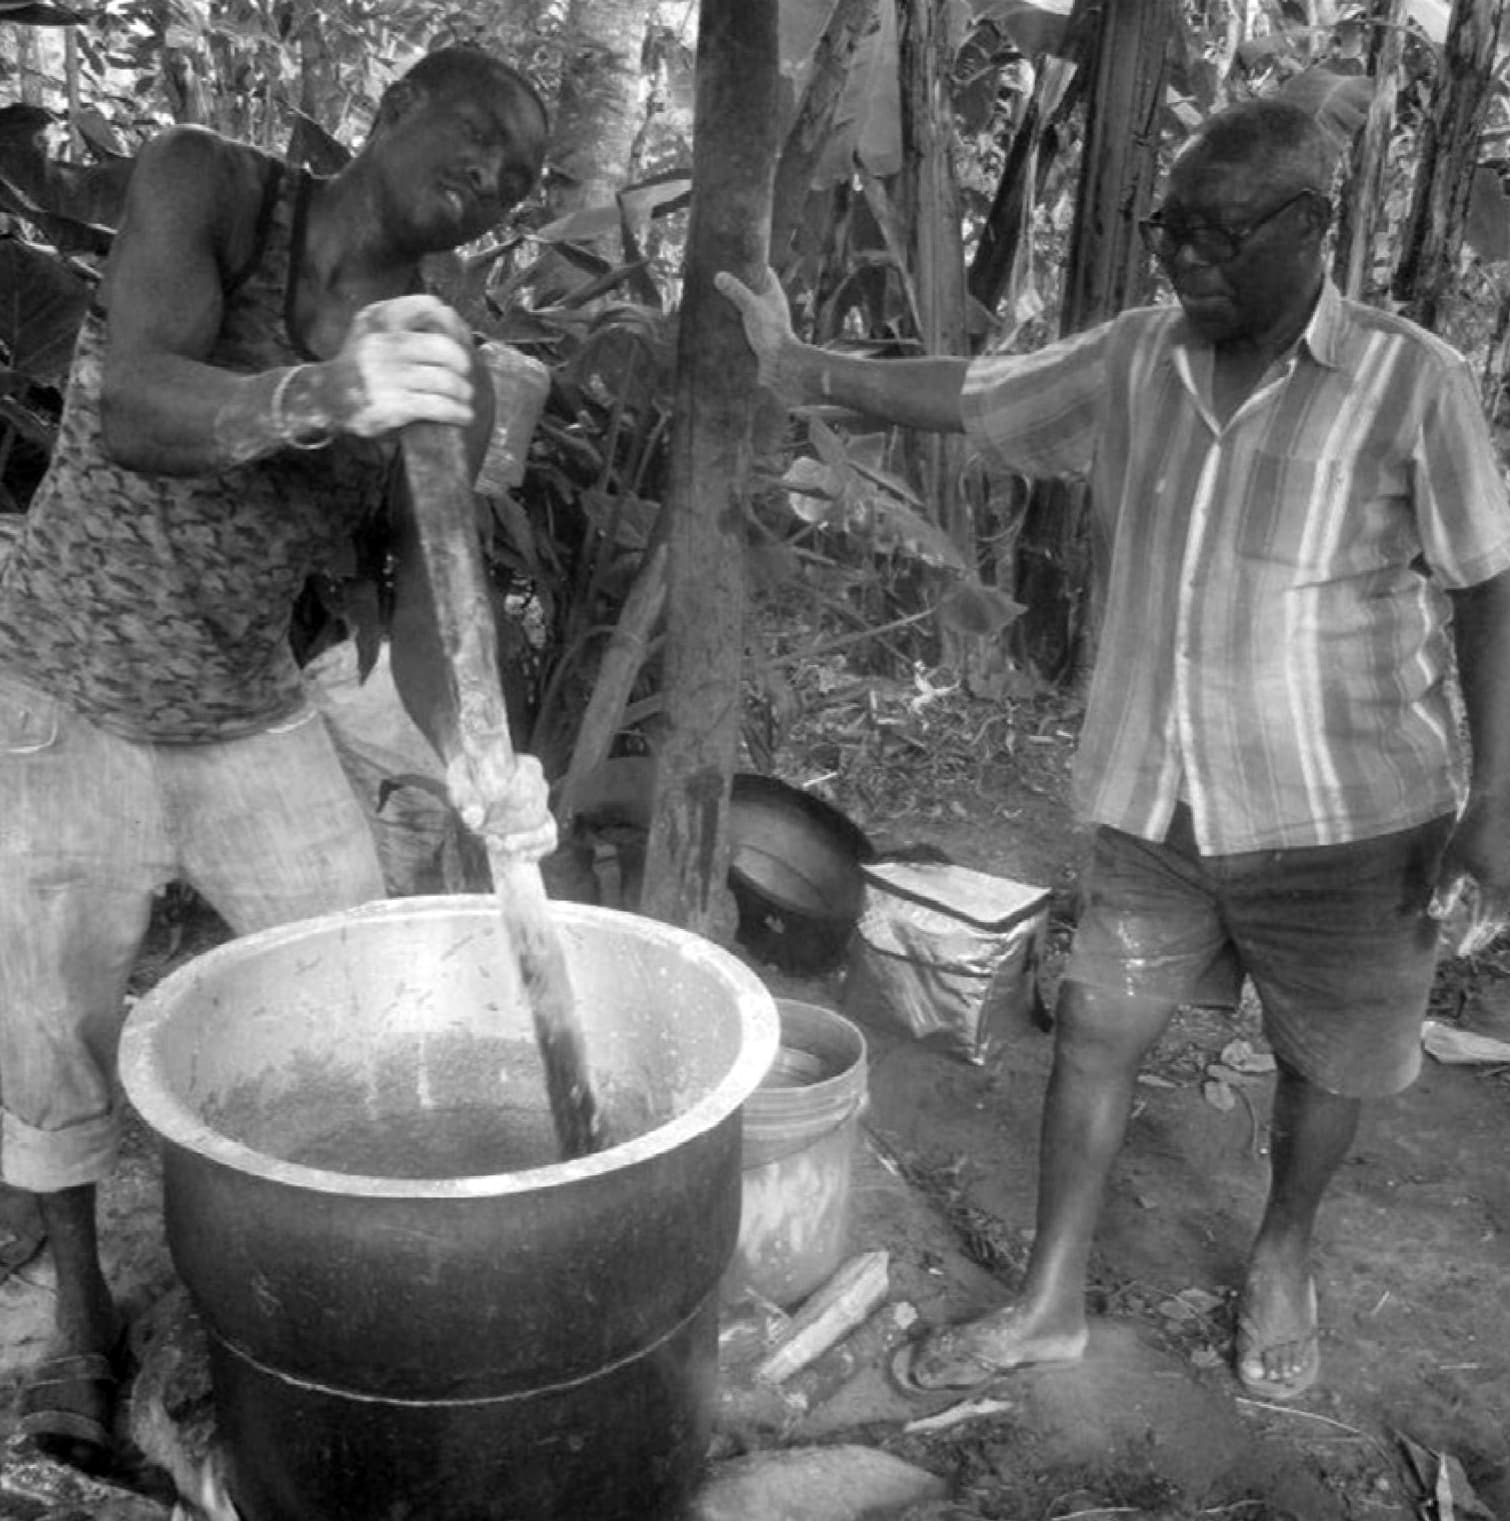 Two men brewing Mbege